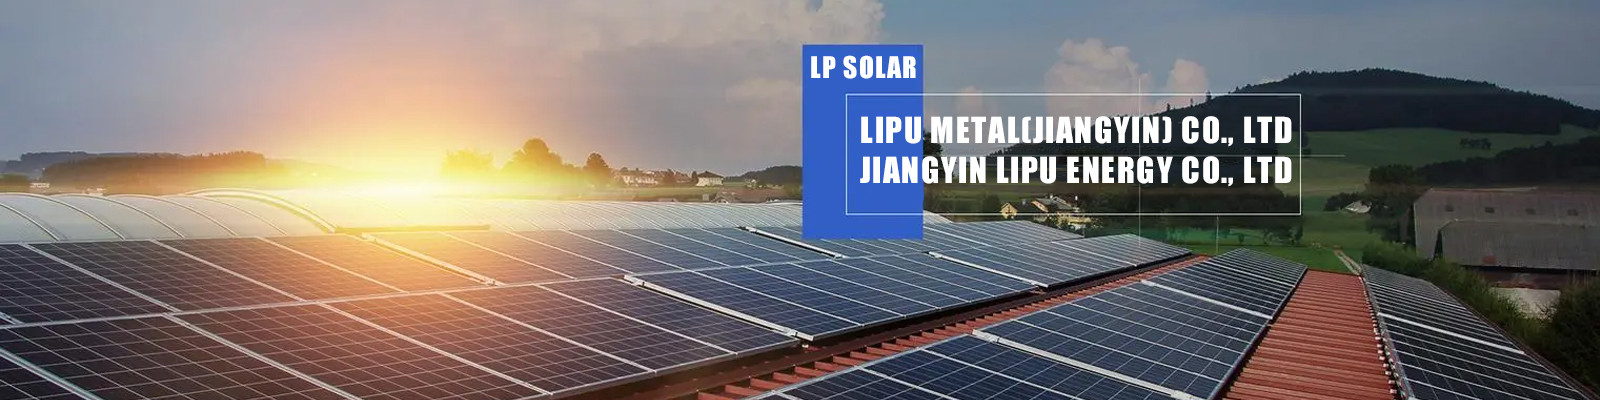 نظام تركيب الطاقة الشمسية على السقف المعدني